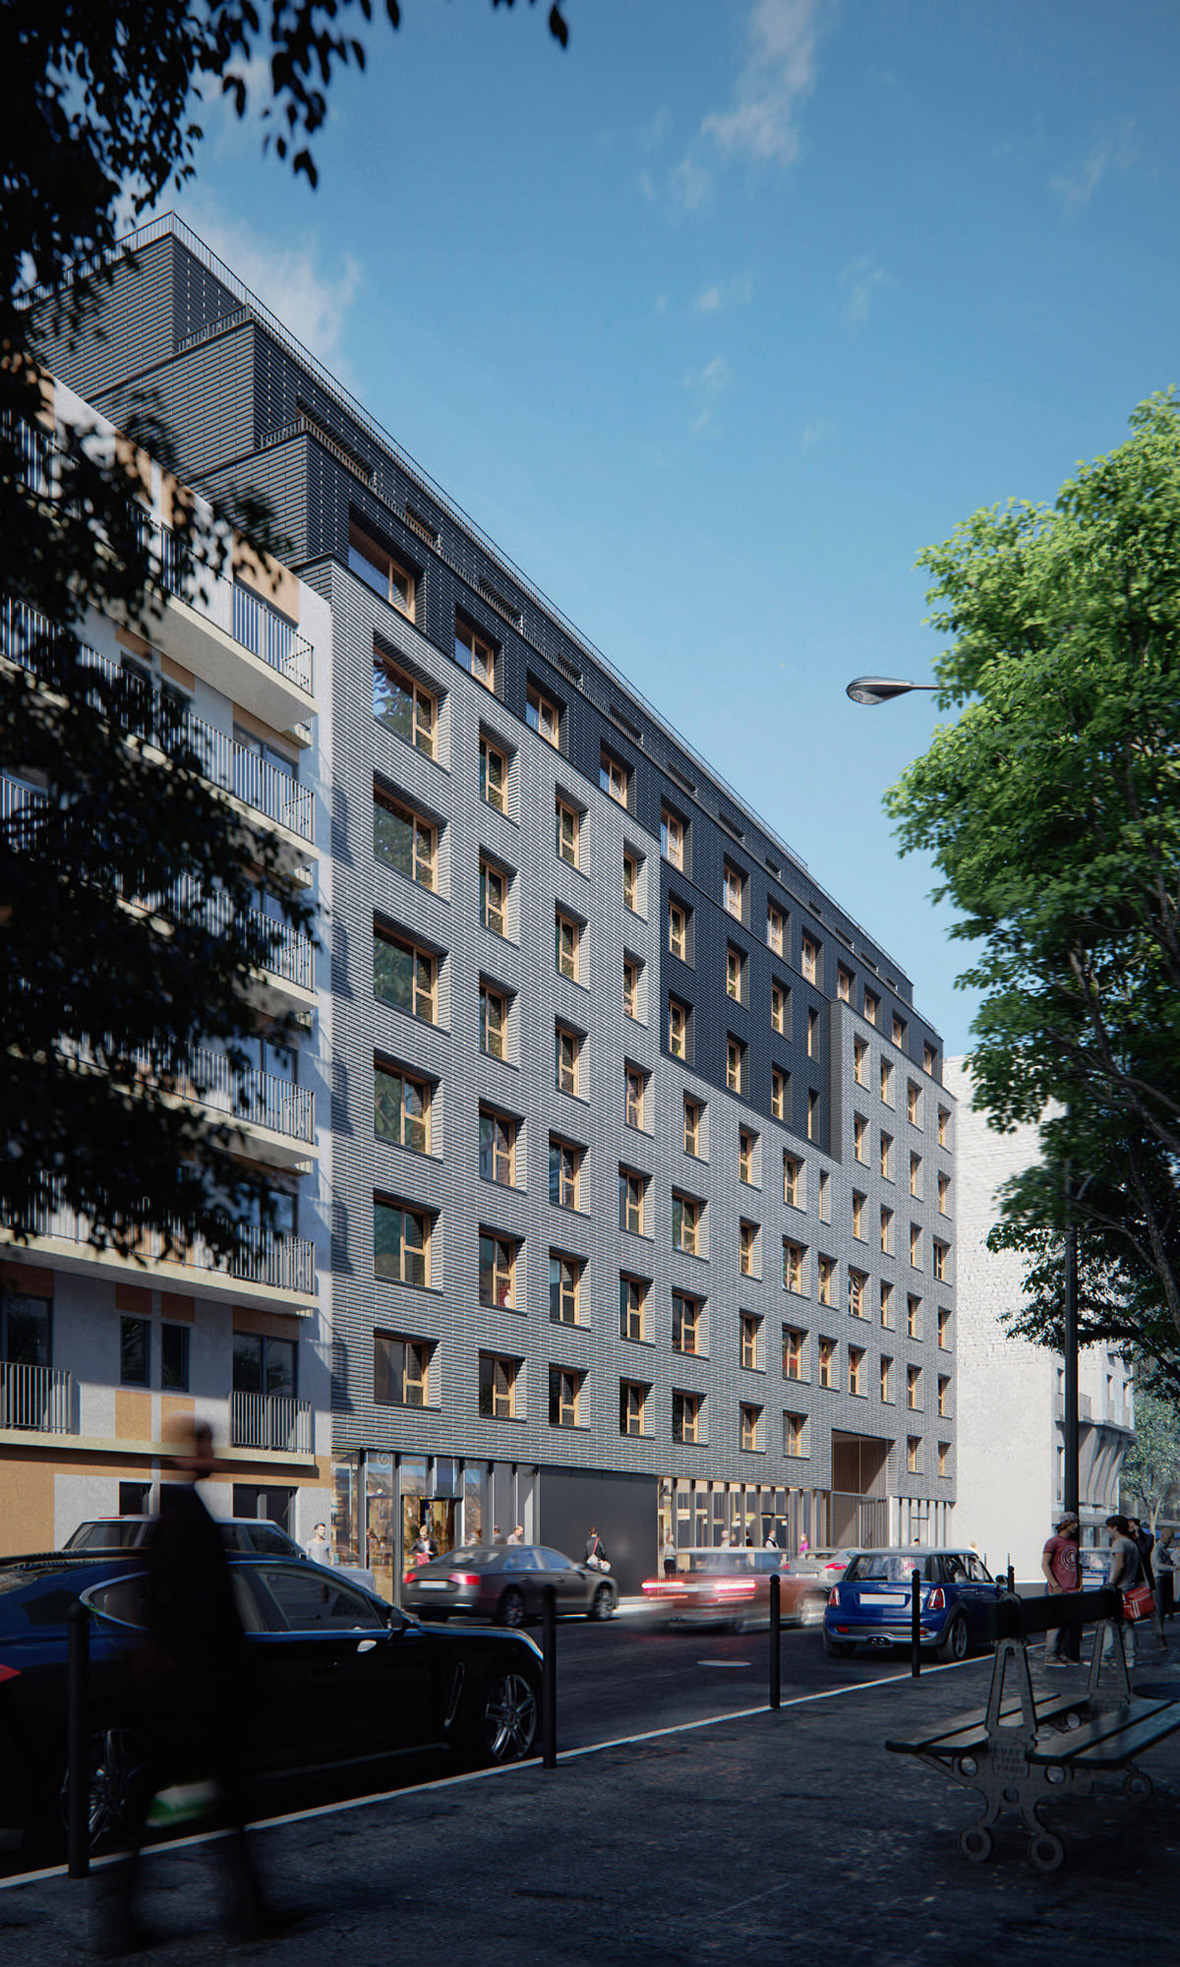 Rendu architectural 3D de la vue de côté des condos résidentiels à Paris sur fond urbain